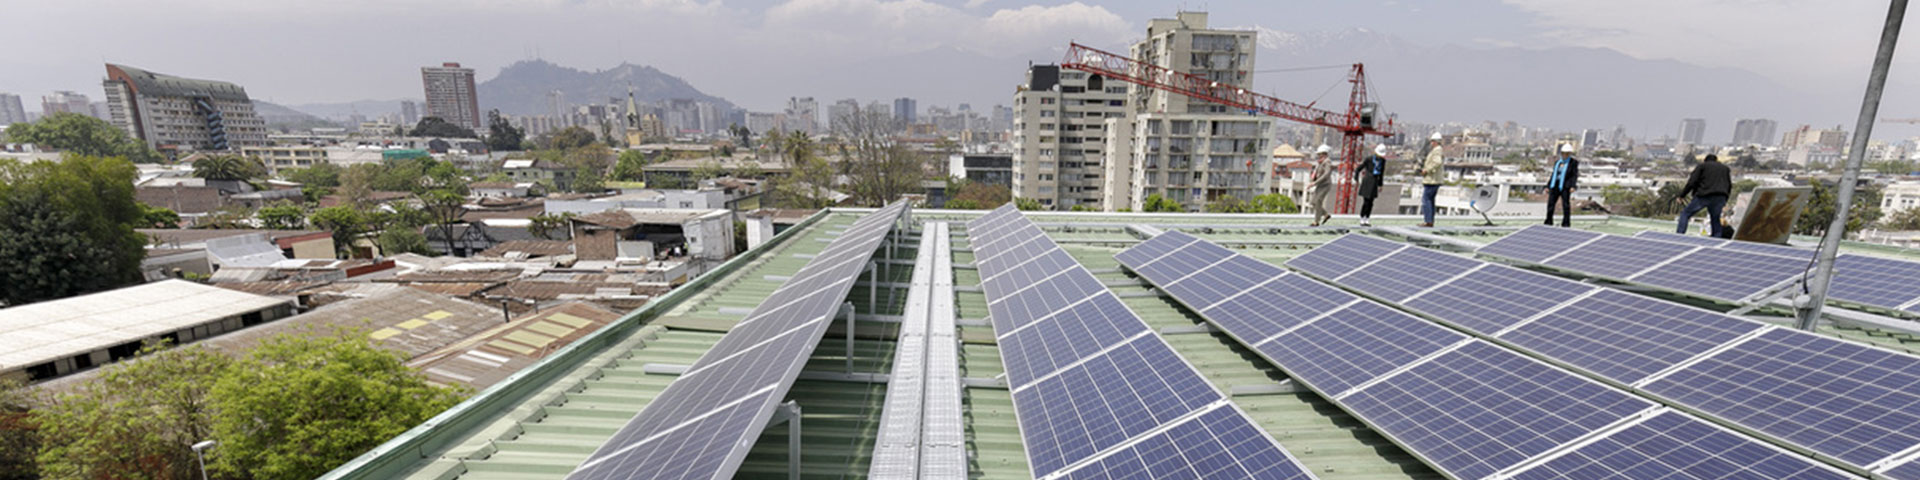 Photovoltaikanlagen auf dem Dach einer Fabrik 